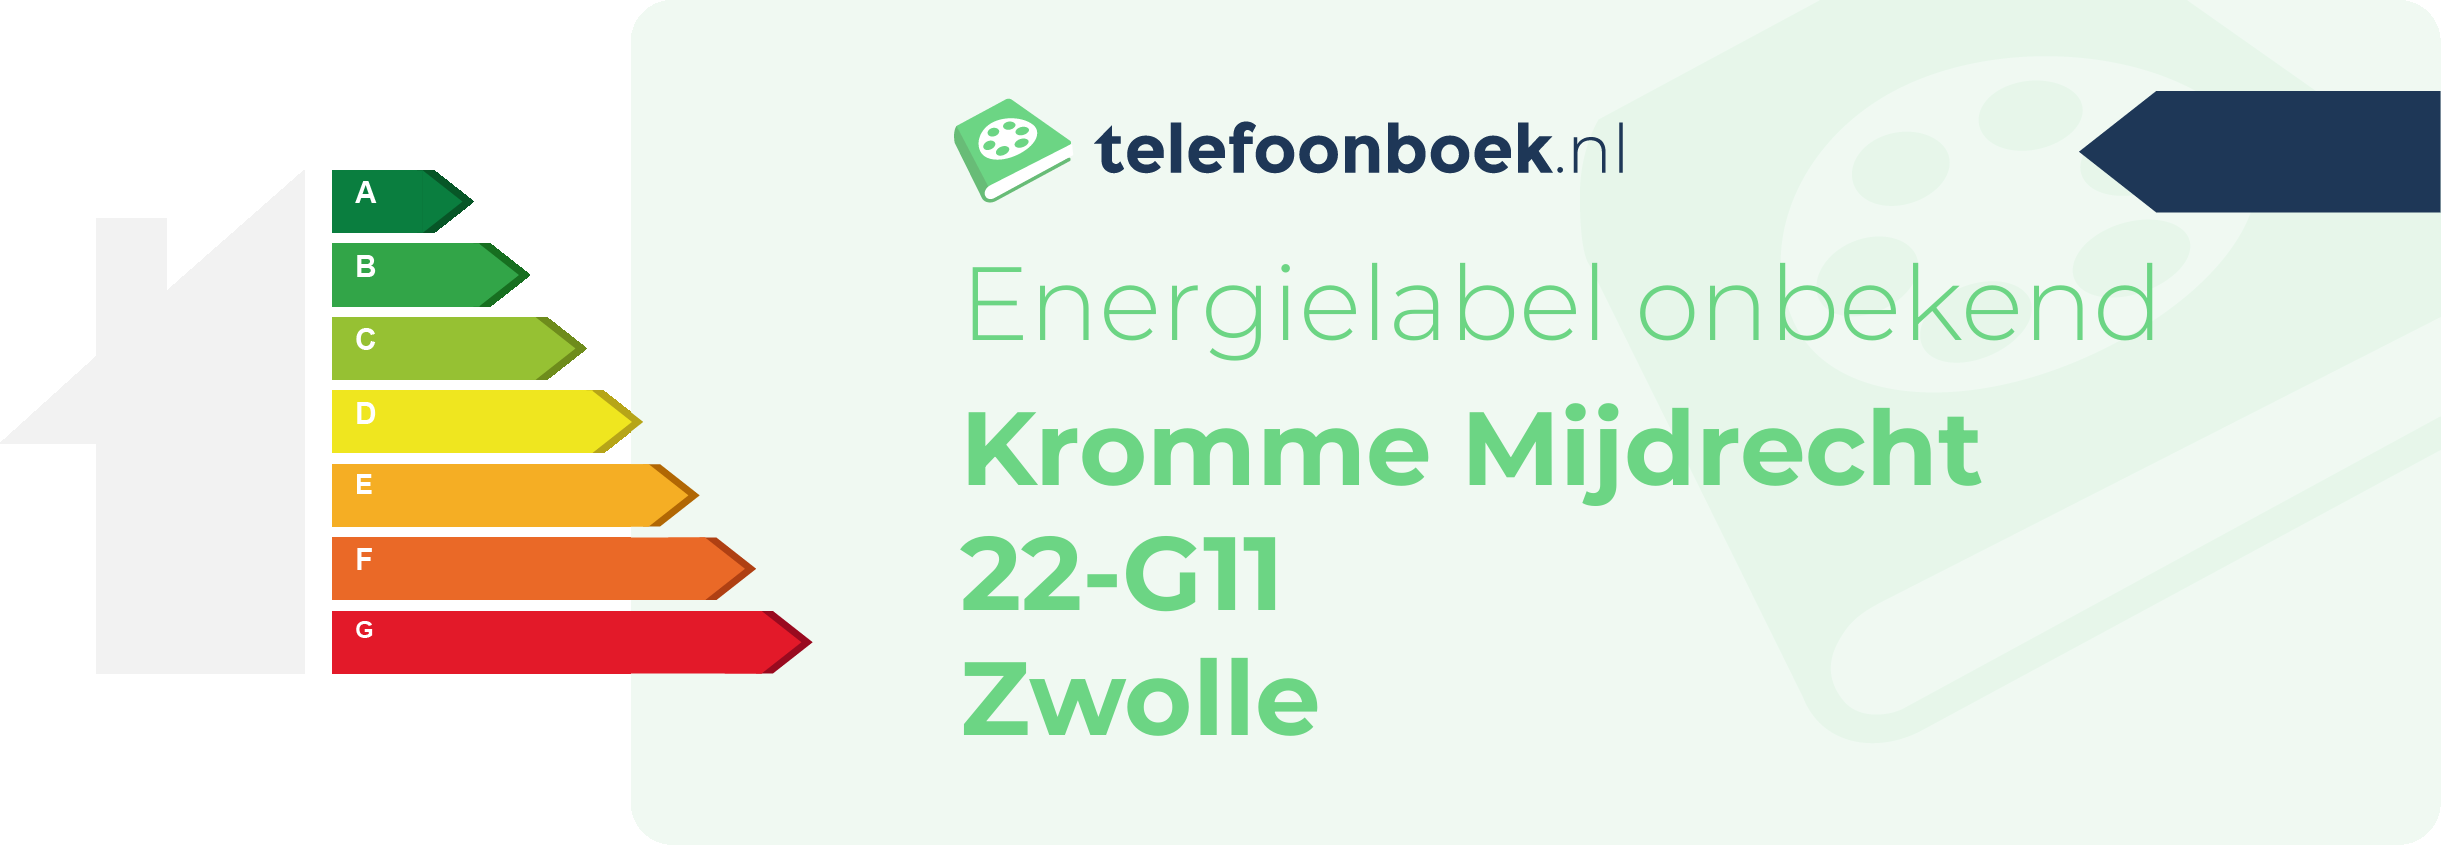 Energielabel Kromme Mijdrecht 22-G11 Zwolle